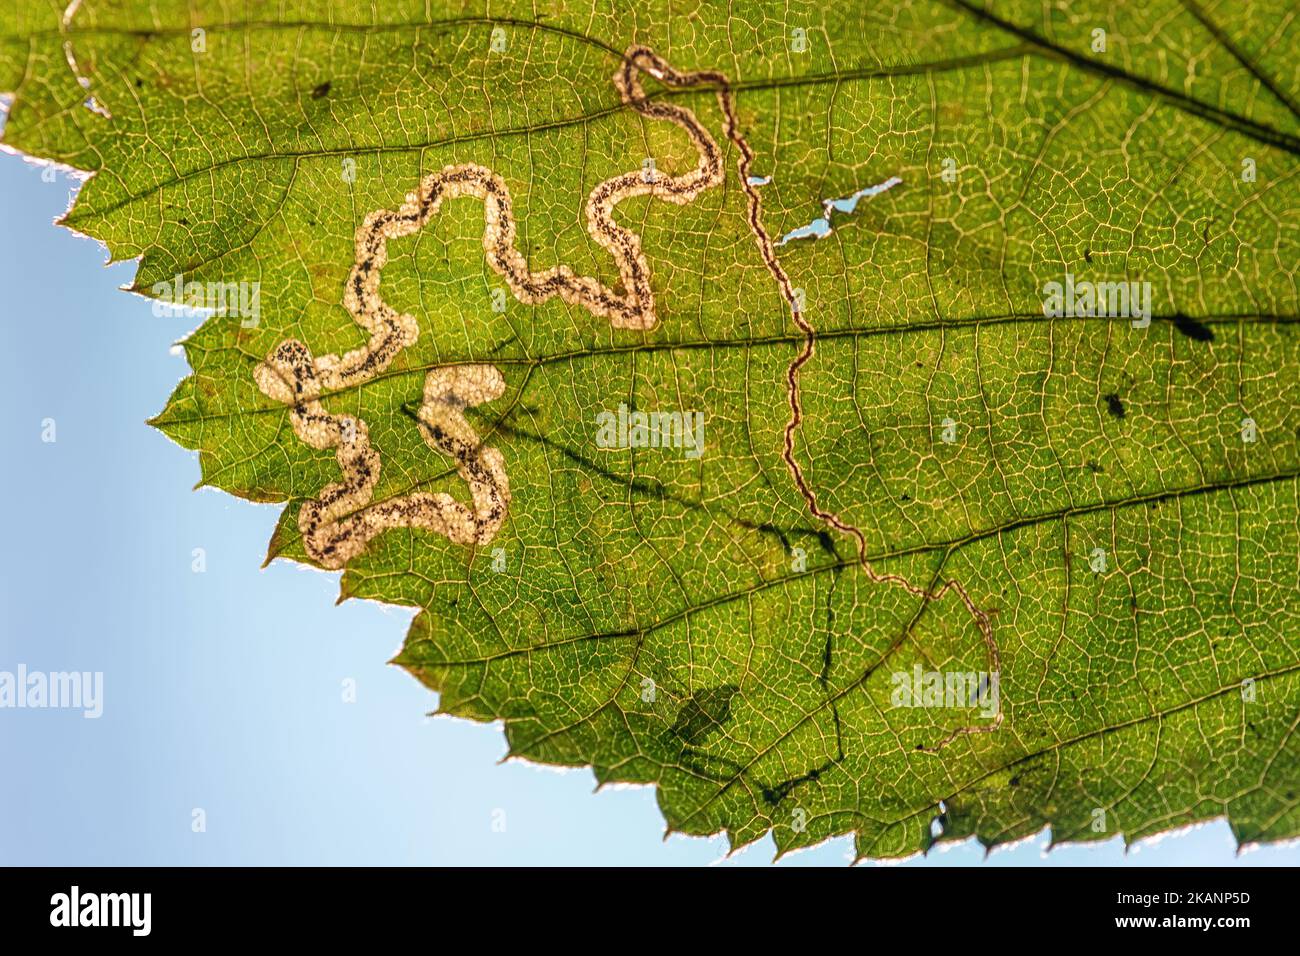 Galerie de mines de feuilles de Stigmella sp. (Probablement S. spendidissimella) sur la feuille agg. De Rubus fruticosus (mûre, saumure) en automne, Angleterre, Royaume-Uni Banque D'Images